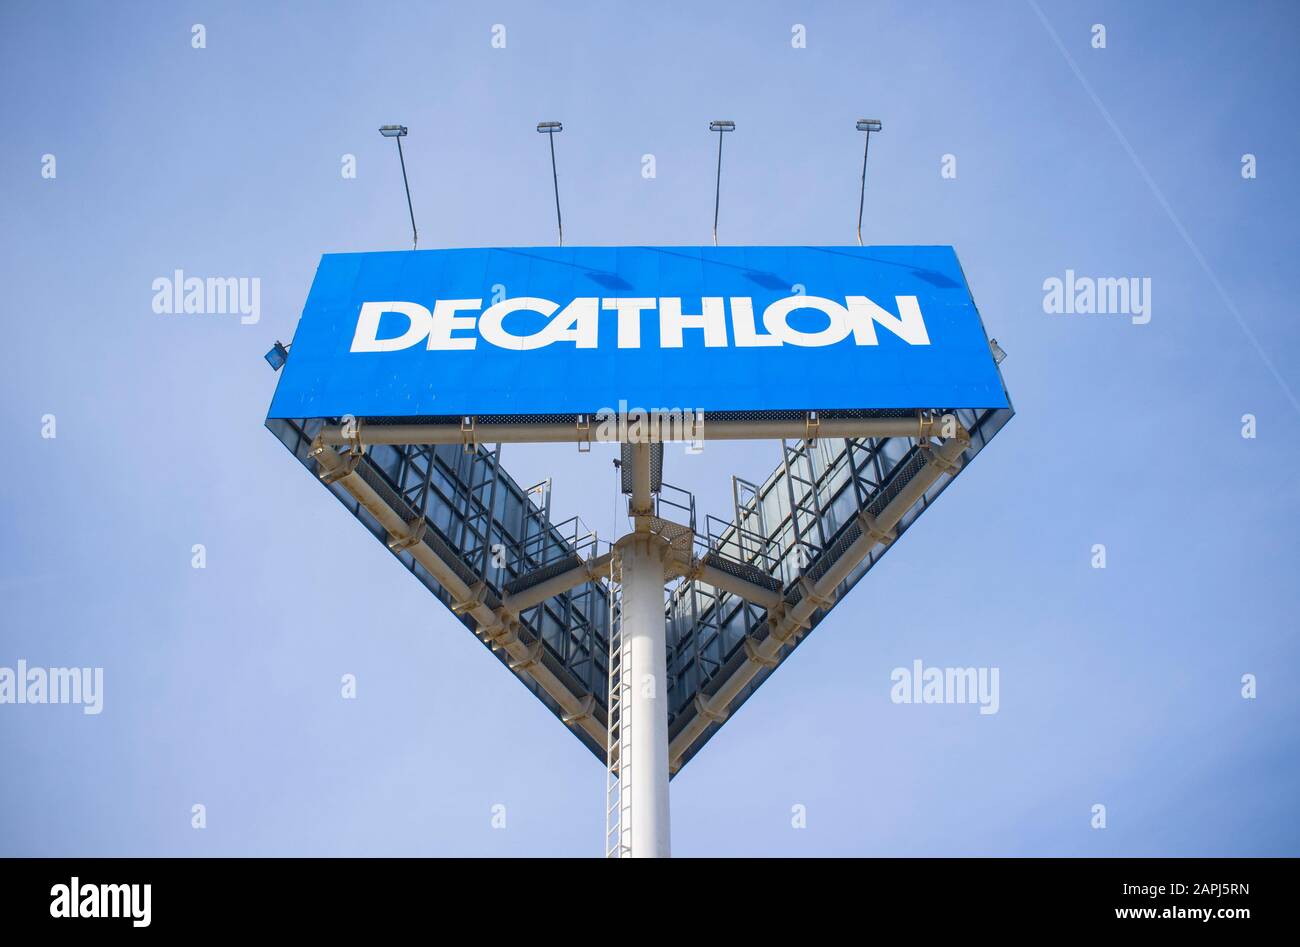 oxylane decathlon stores